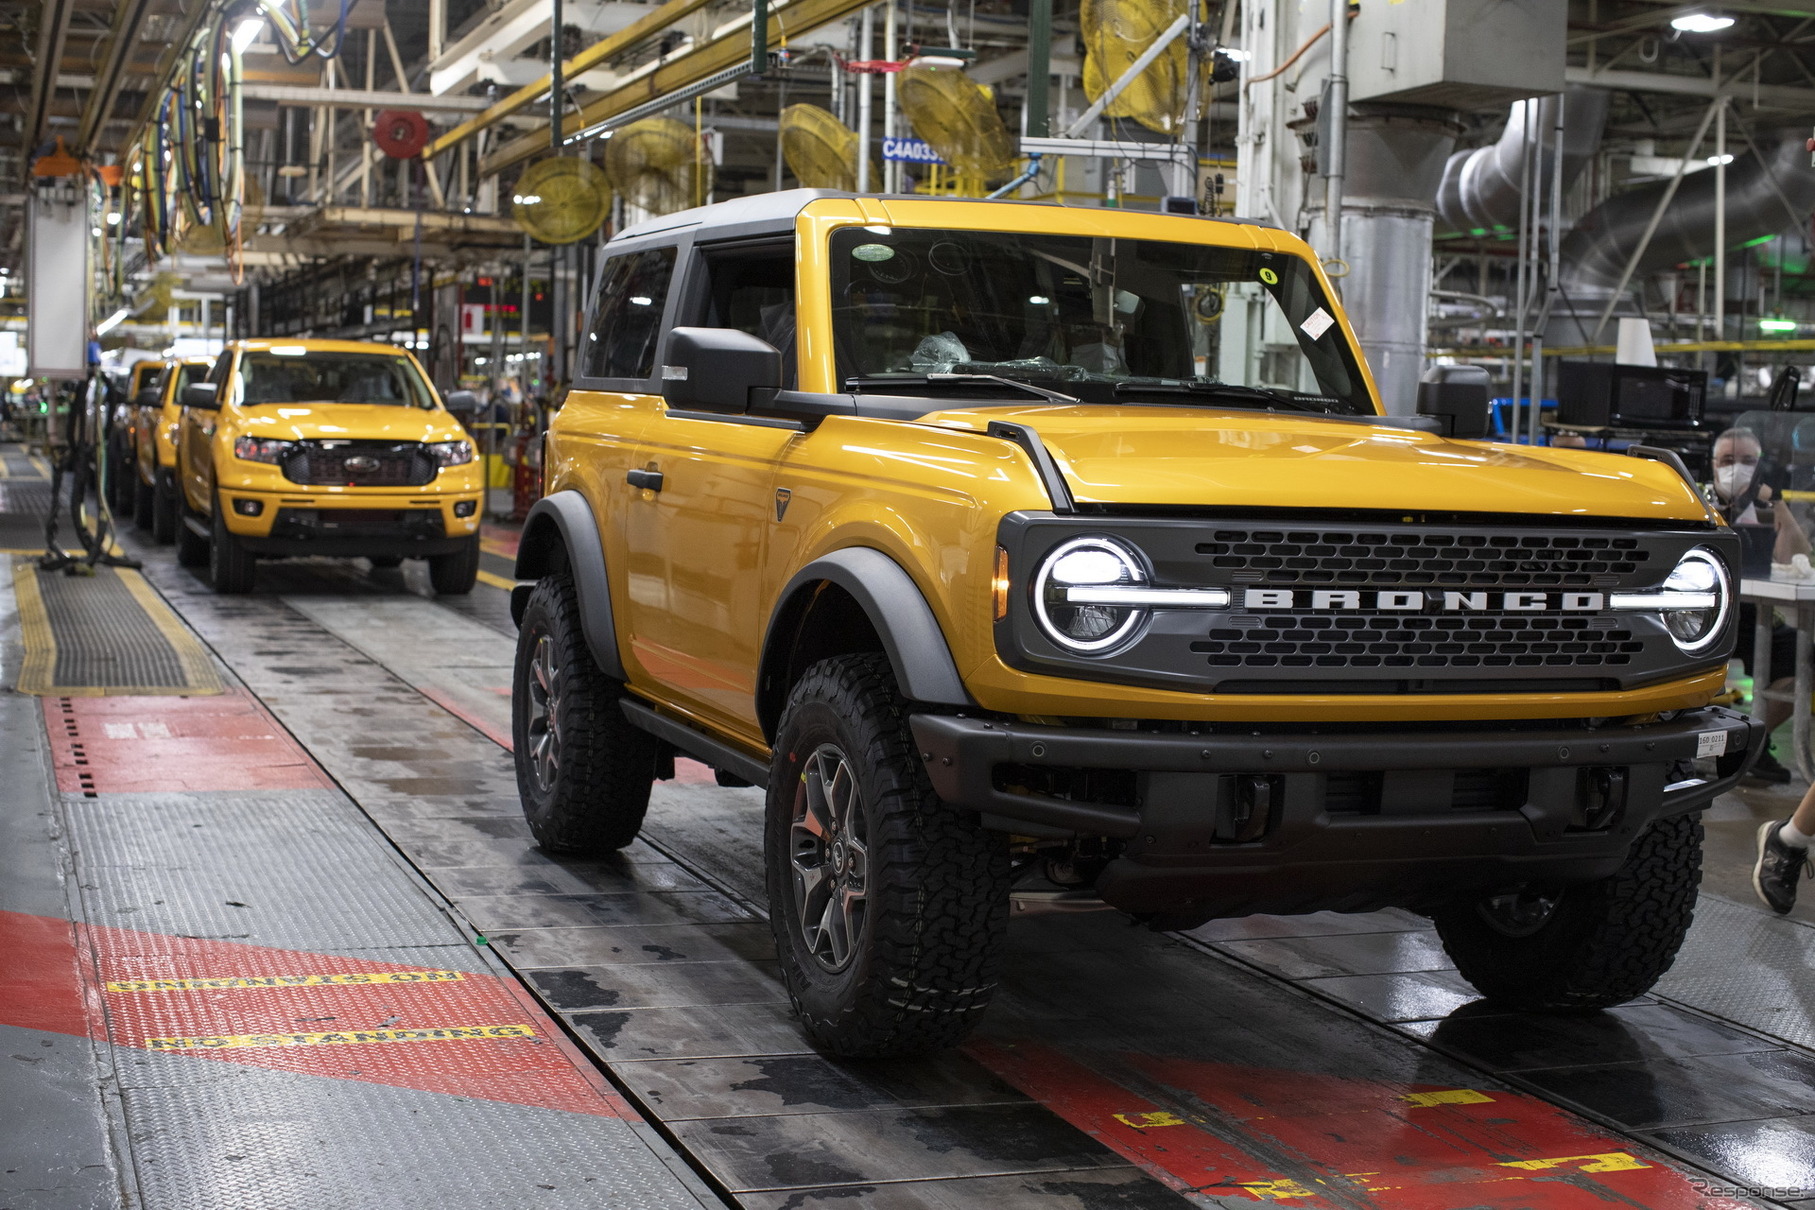 フォード ブロンコ、24年ぶりに復活…新型 生産開始